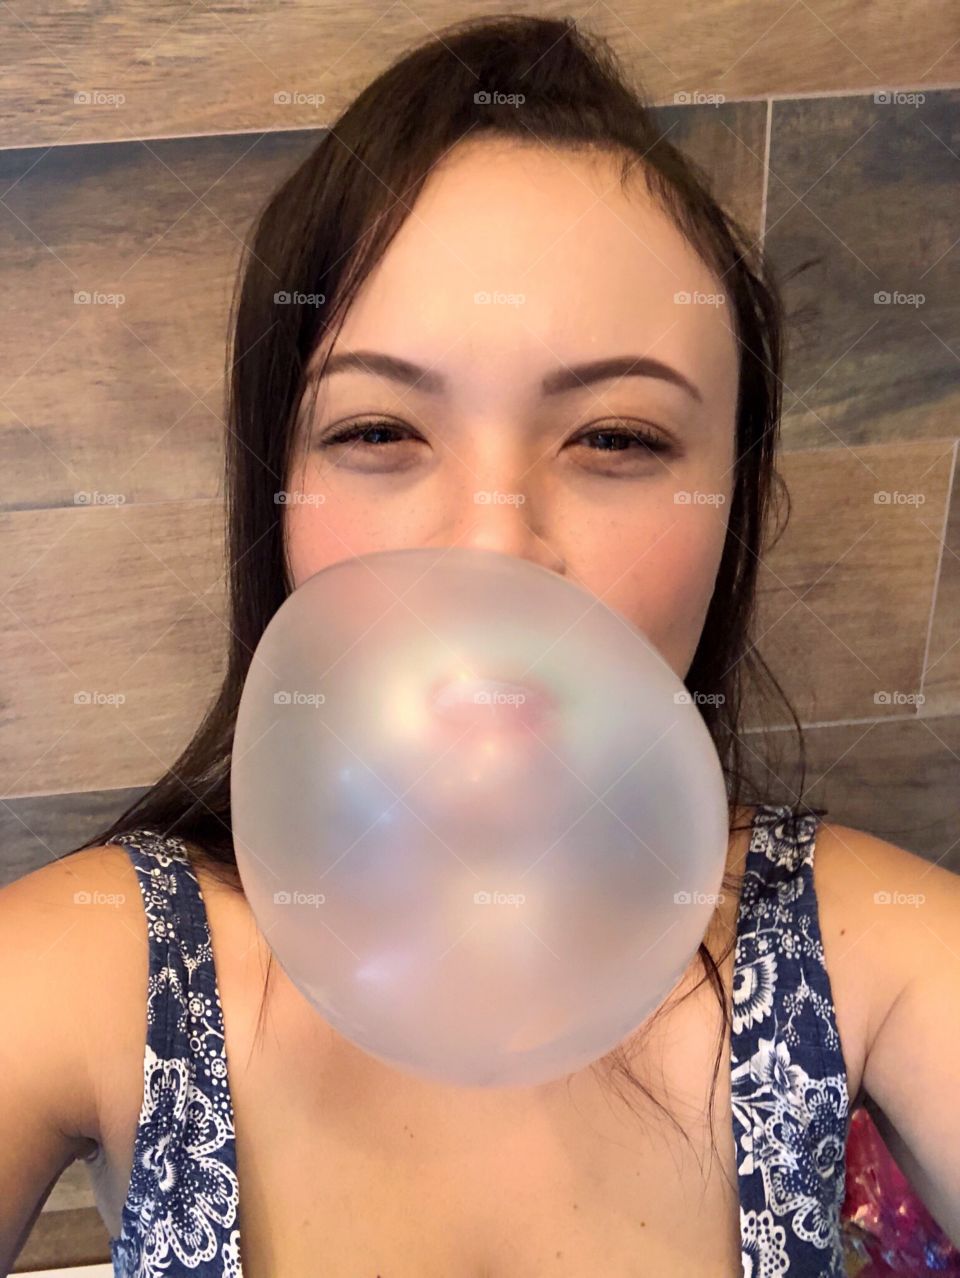 blowing bubblegum ball